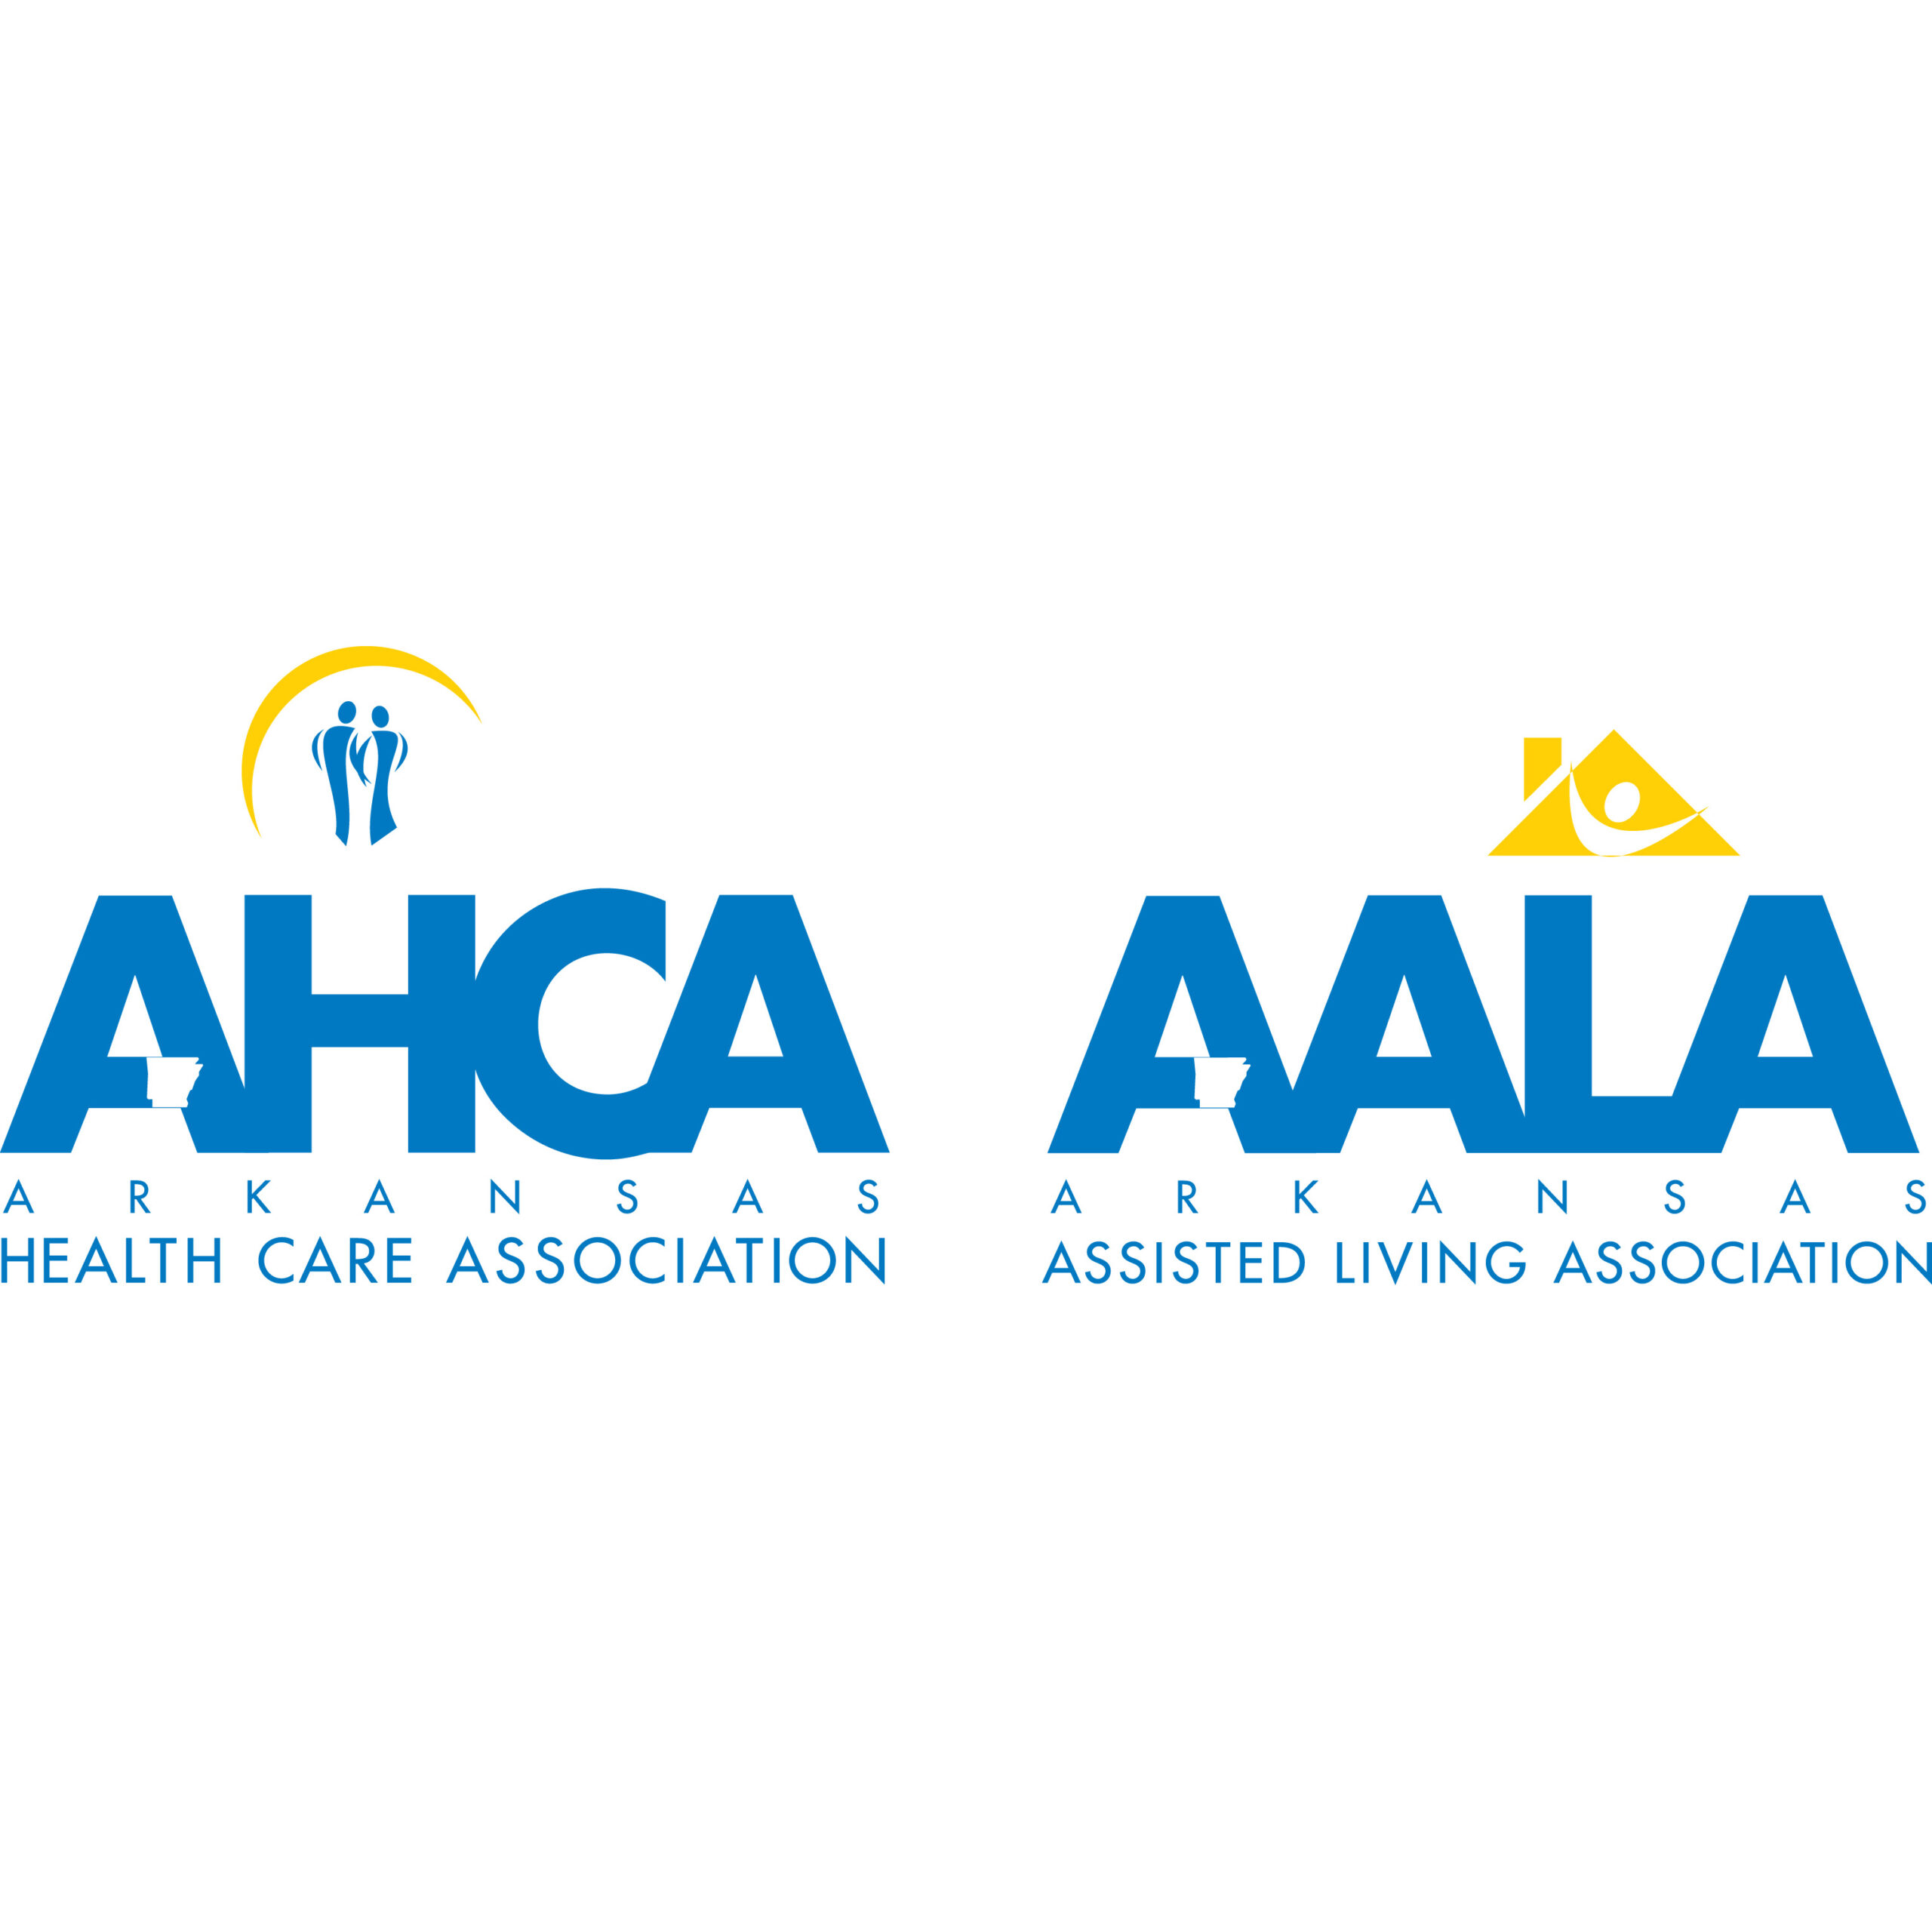 AHCA/AALA